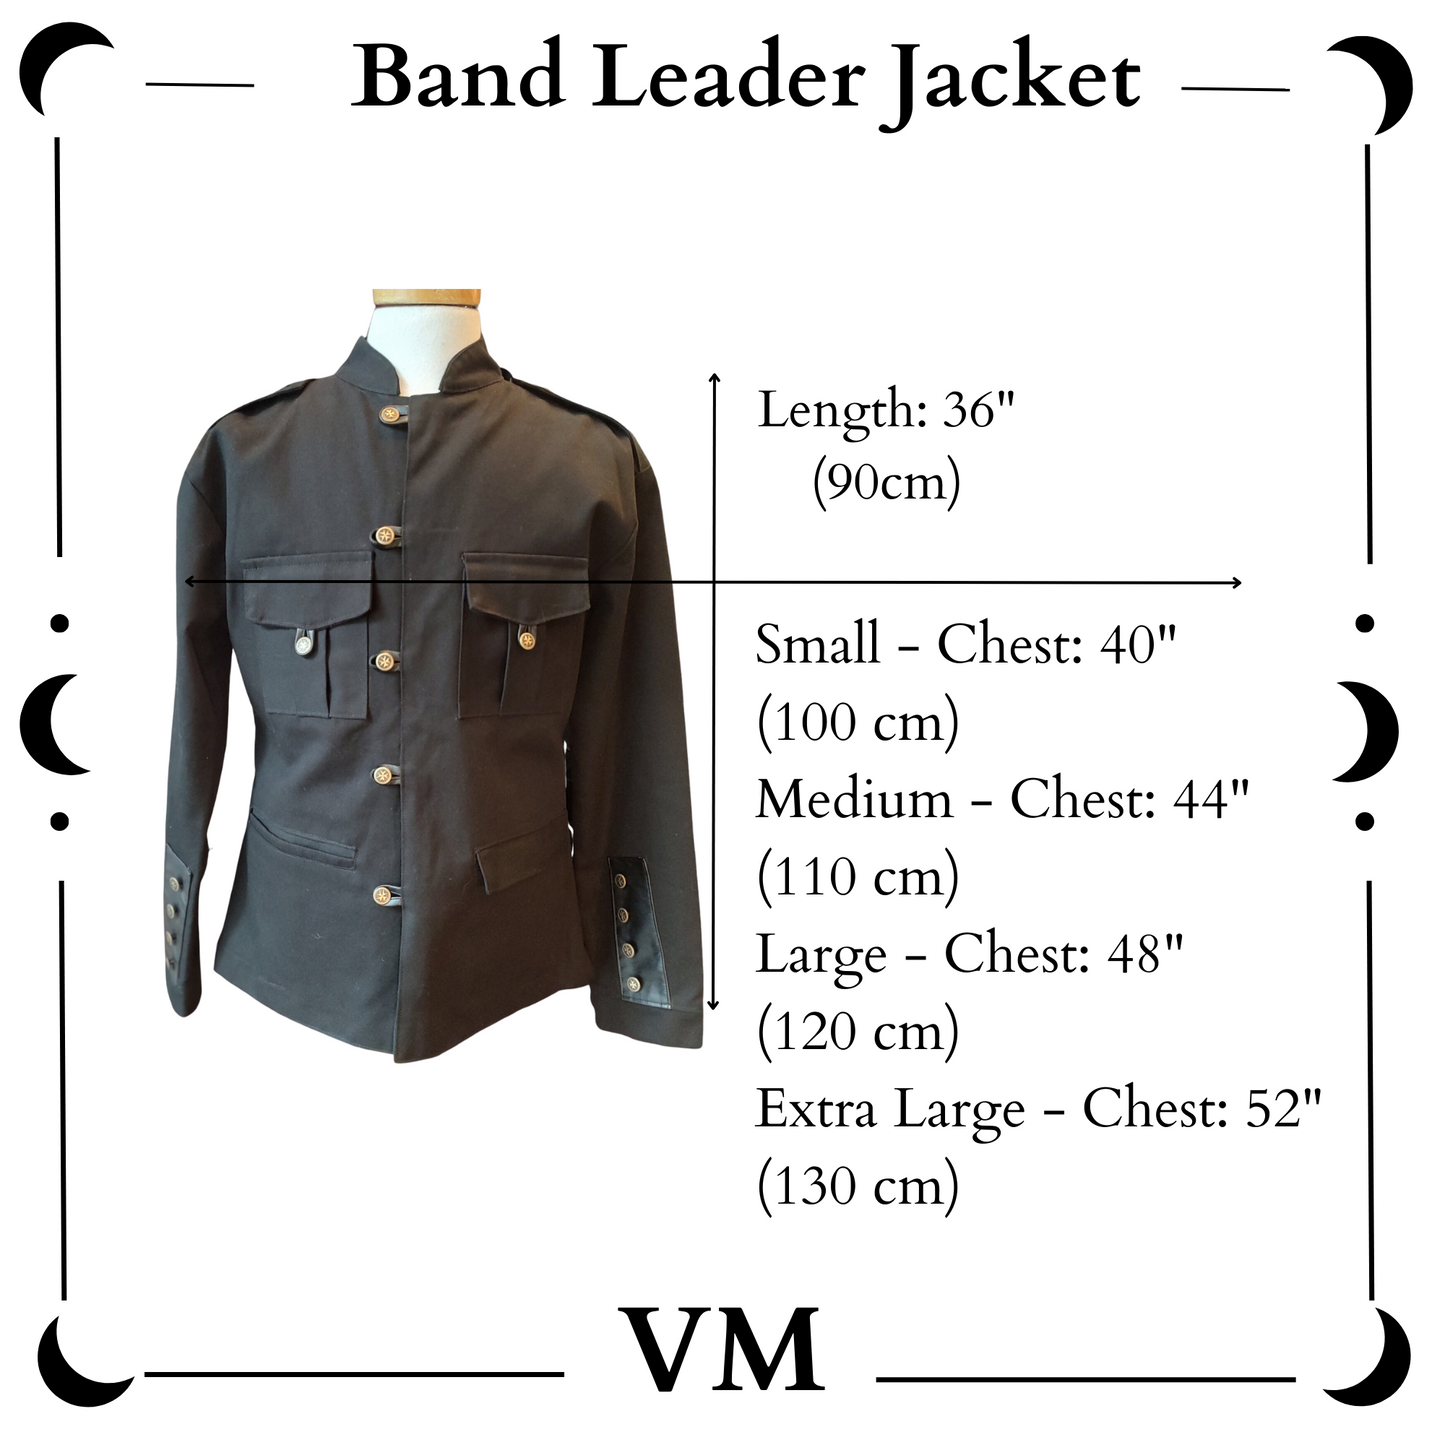 The VM Band Leader Jacket